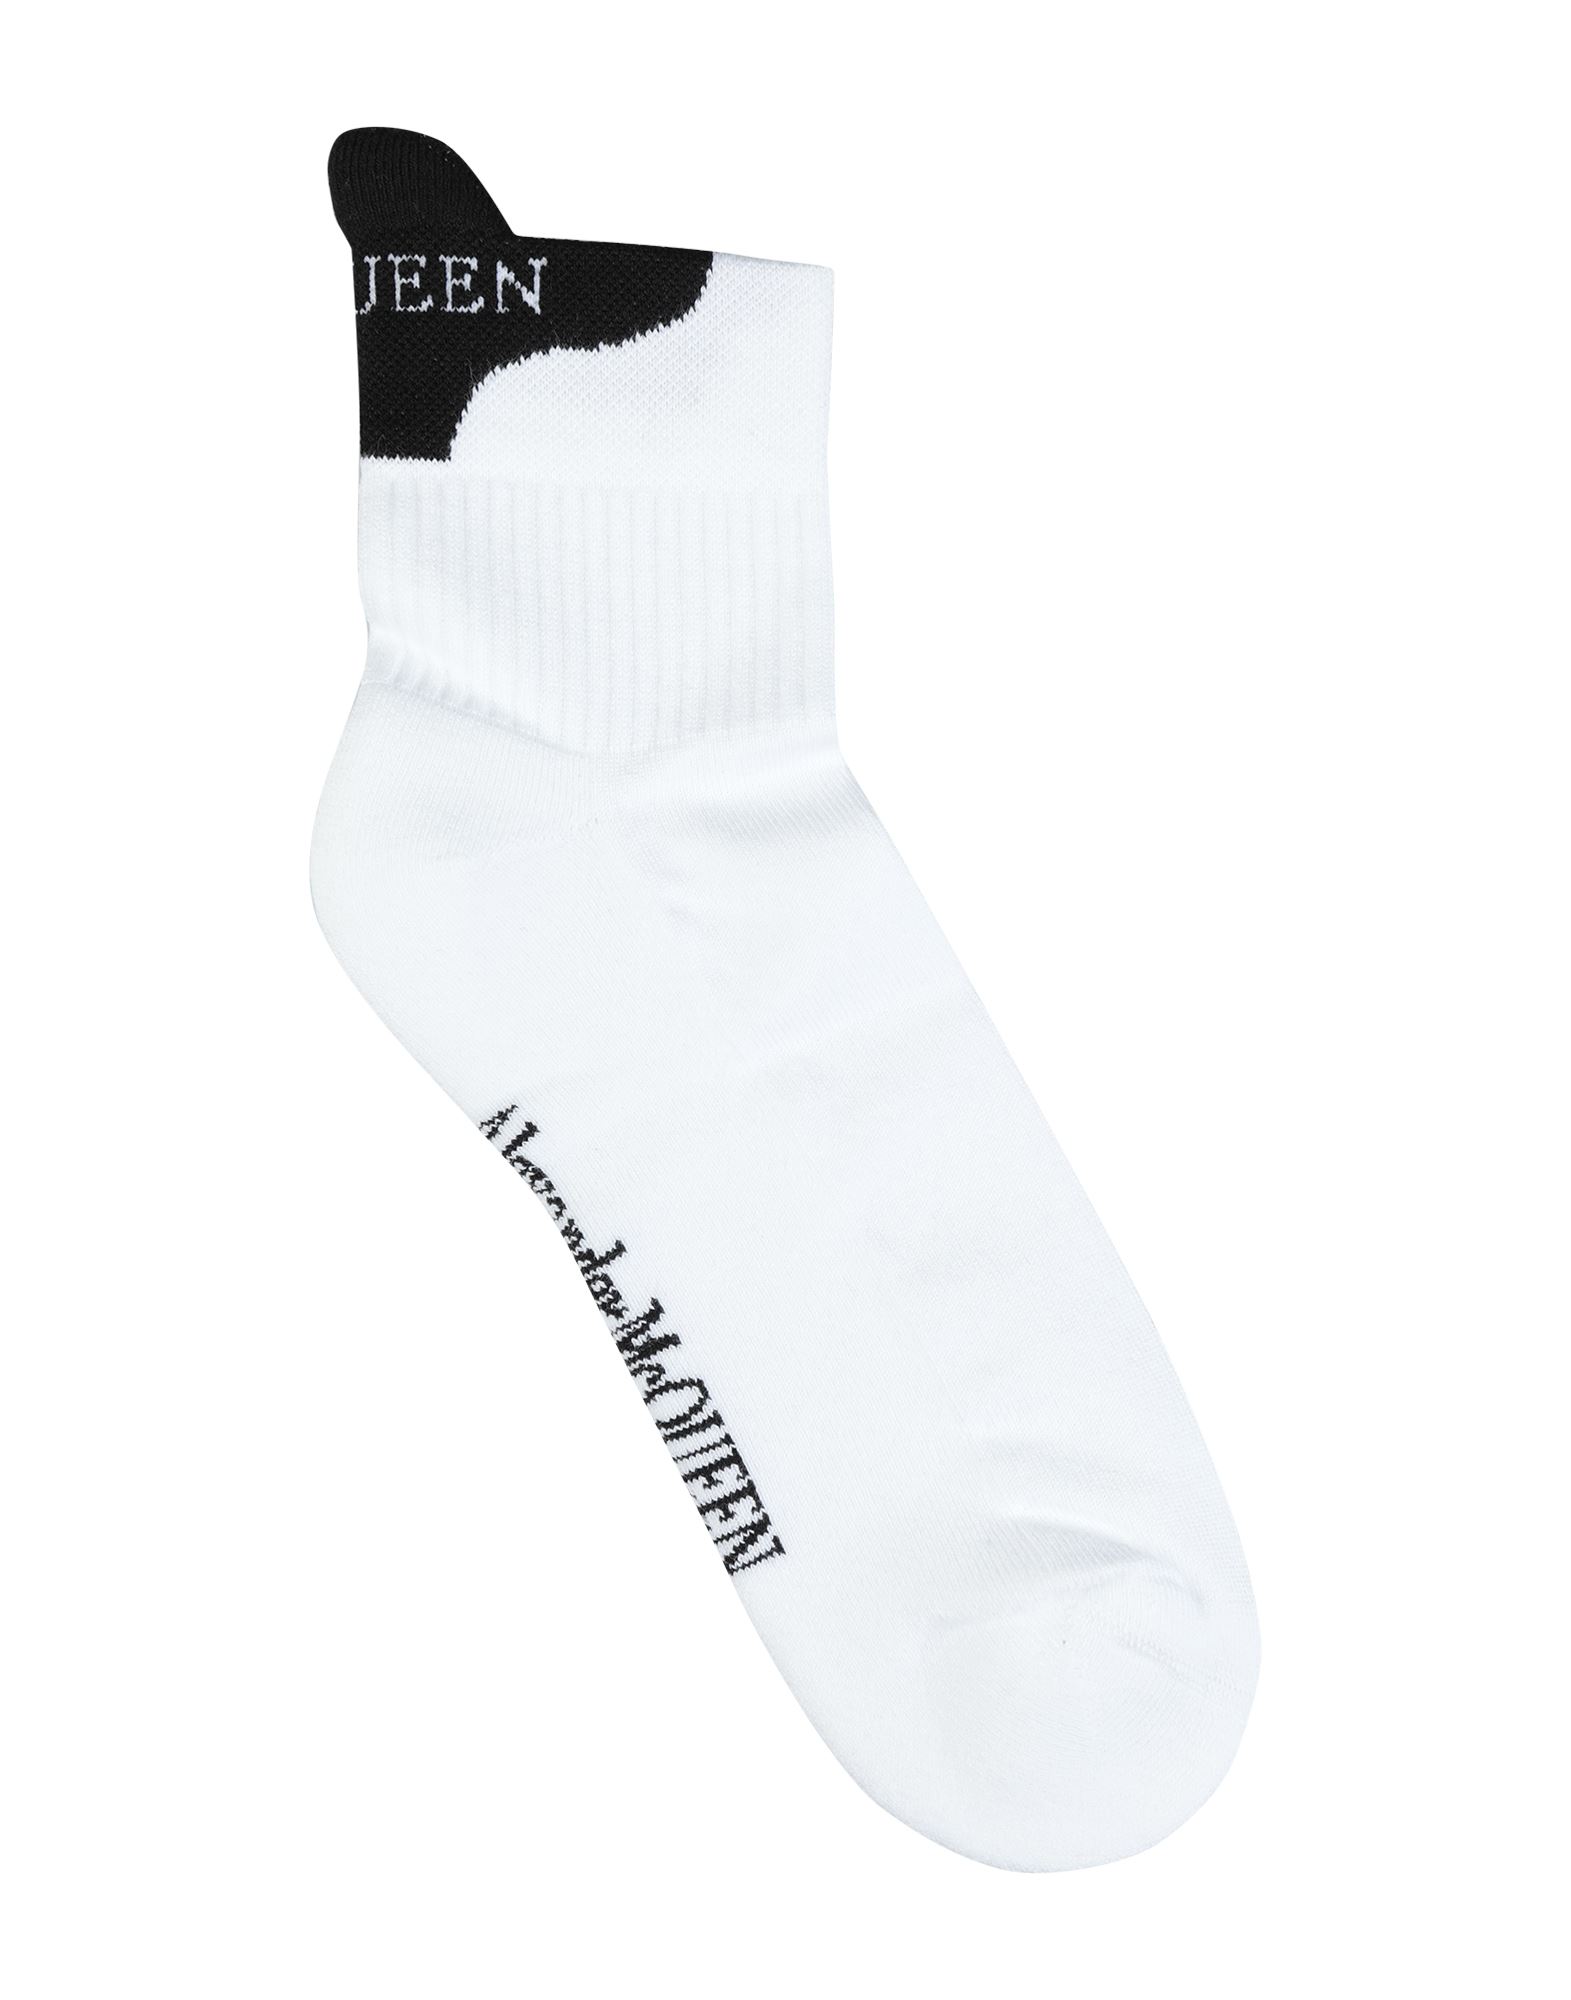 ALEXANDER MCQUEEN Short socks - Item 48240113